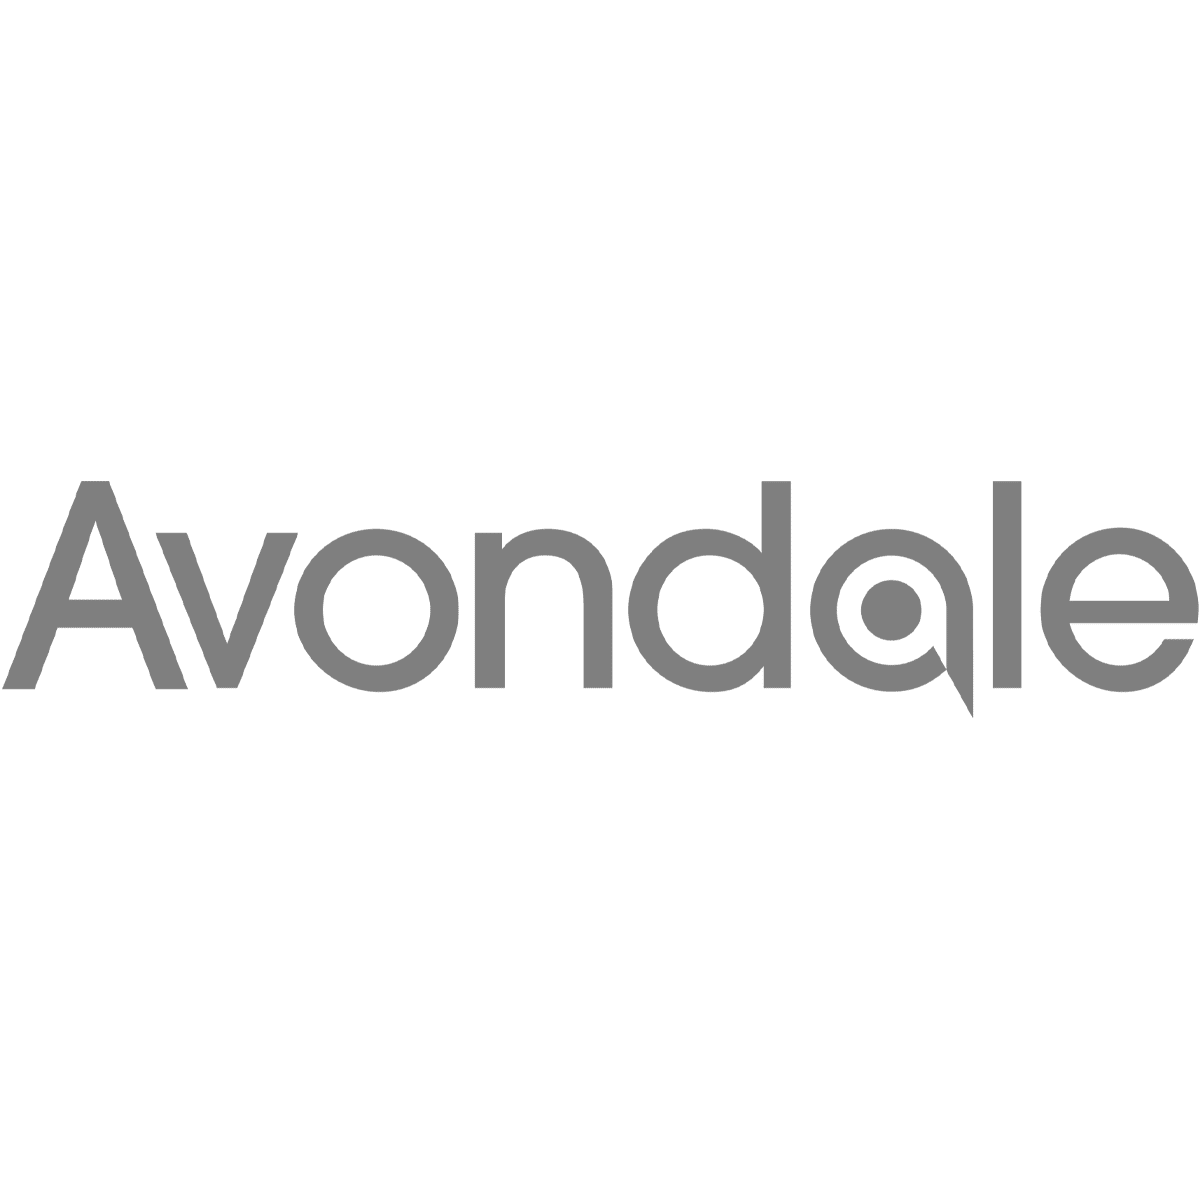 Client-Logos-Avondale